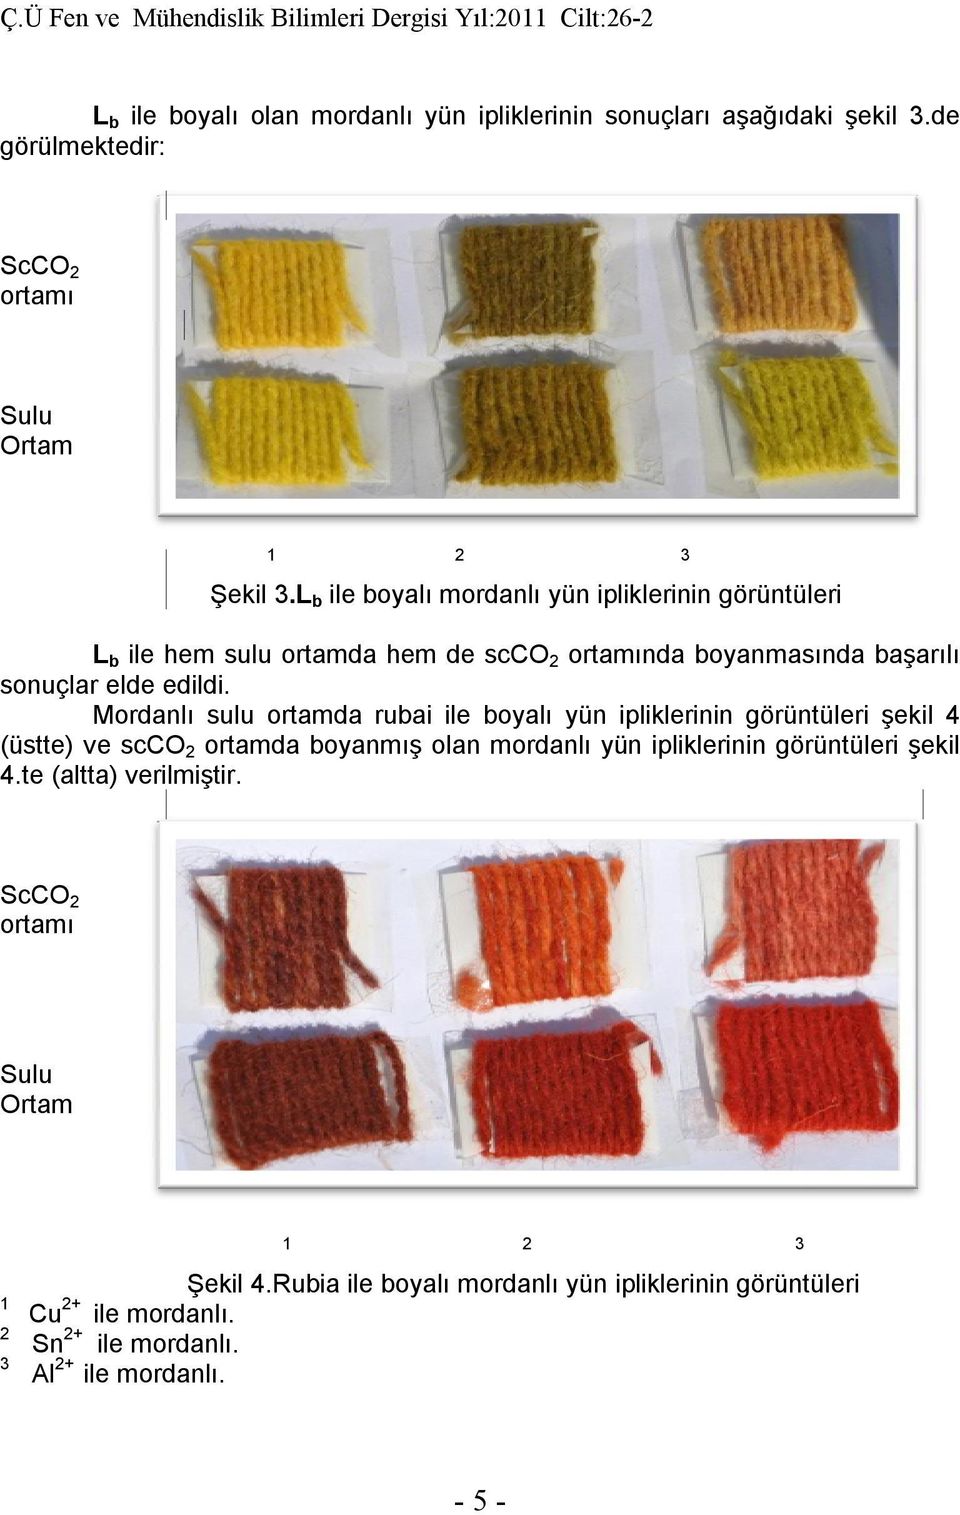 Mordanlı sulu ortamda rubai ile boyalı yün ipliklerinin görüntüleri şekil 4 (üstte) ve scco 2 ortamda boyanmış olan mordanlı yün ipliklerinin görüntüleri